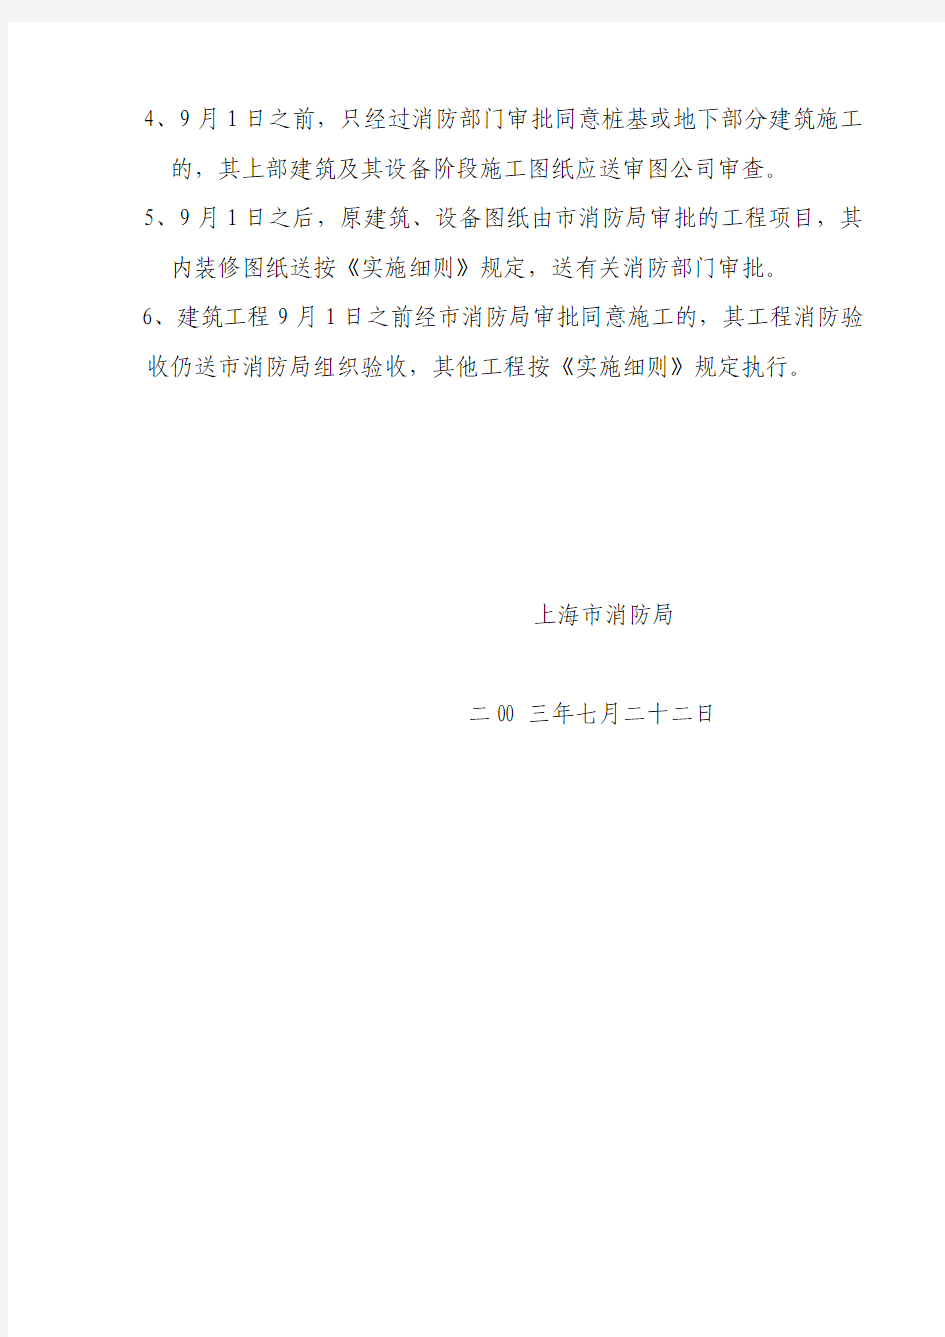 关于颁布《上海市建筑工程消防设计审核管理工作改革实施细则》的通知